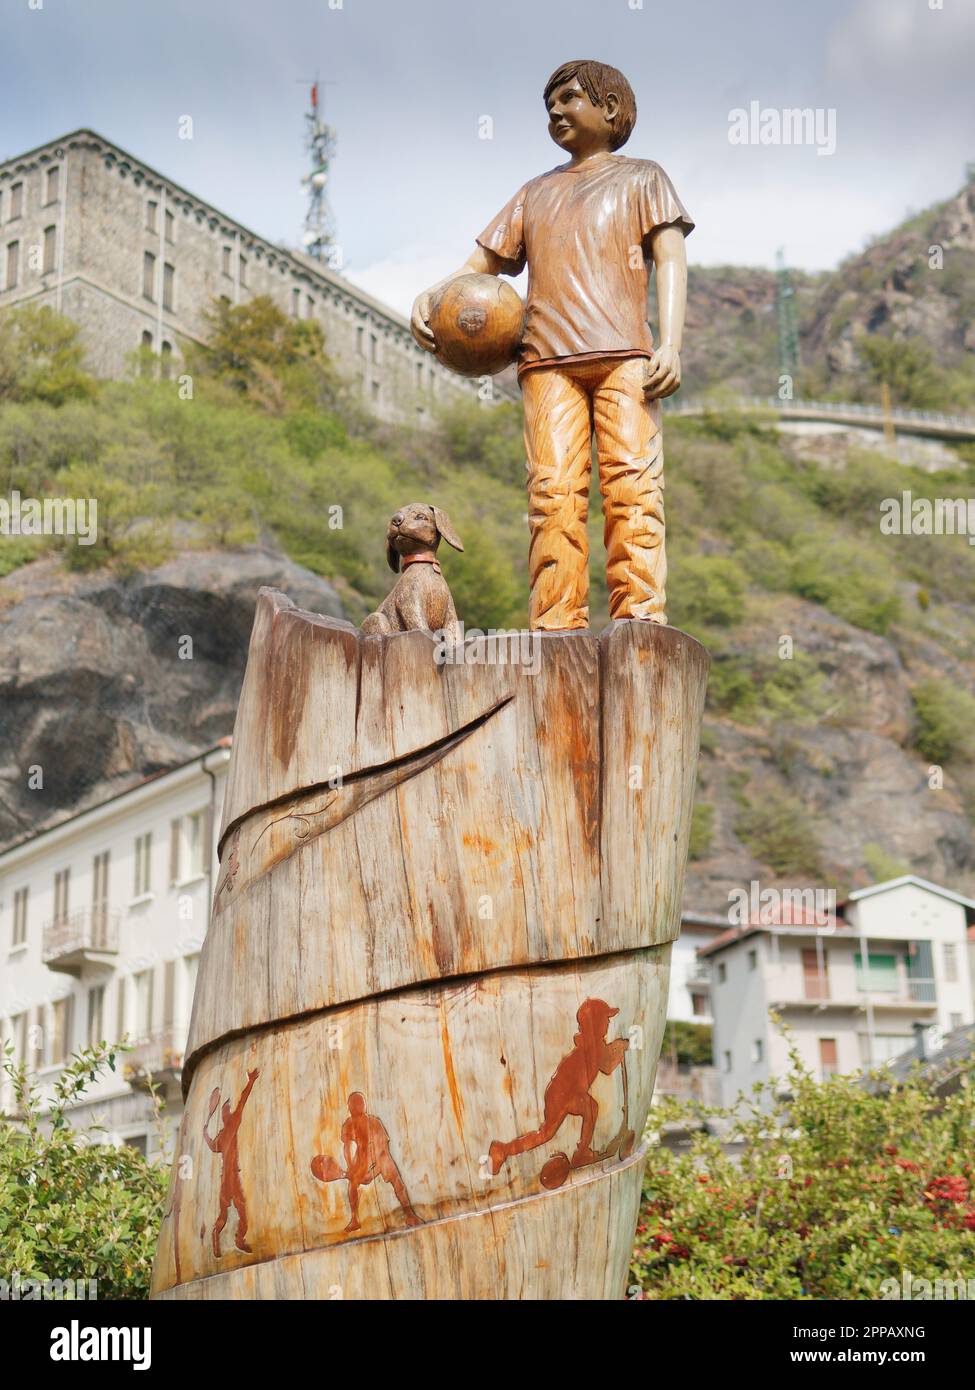 Estatua de madera de un niño con una pelota y un perro en un parque en la ciudad de Pont-Saint-Martin, Valle de Aosta, NW Italia Foto de stock